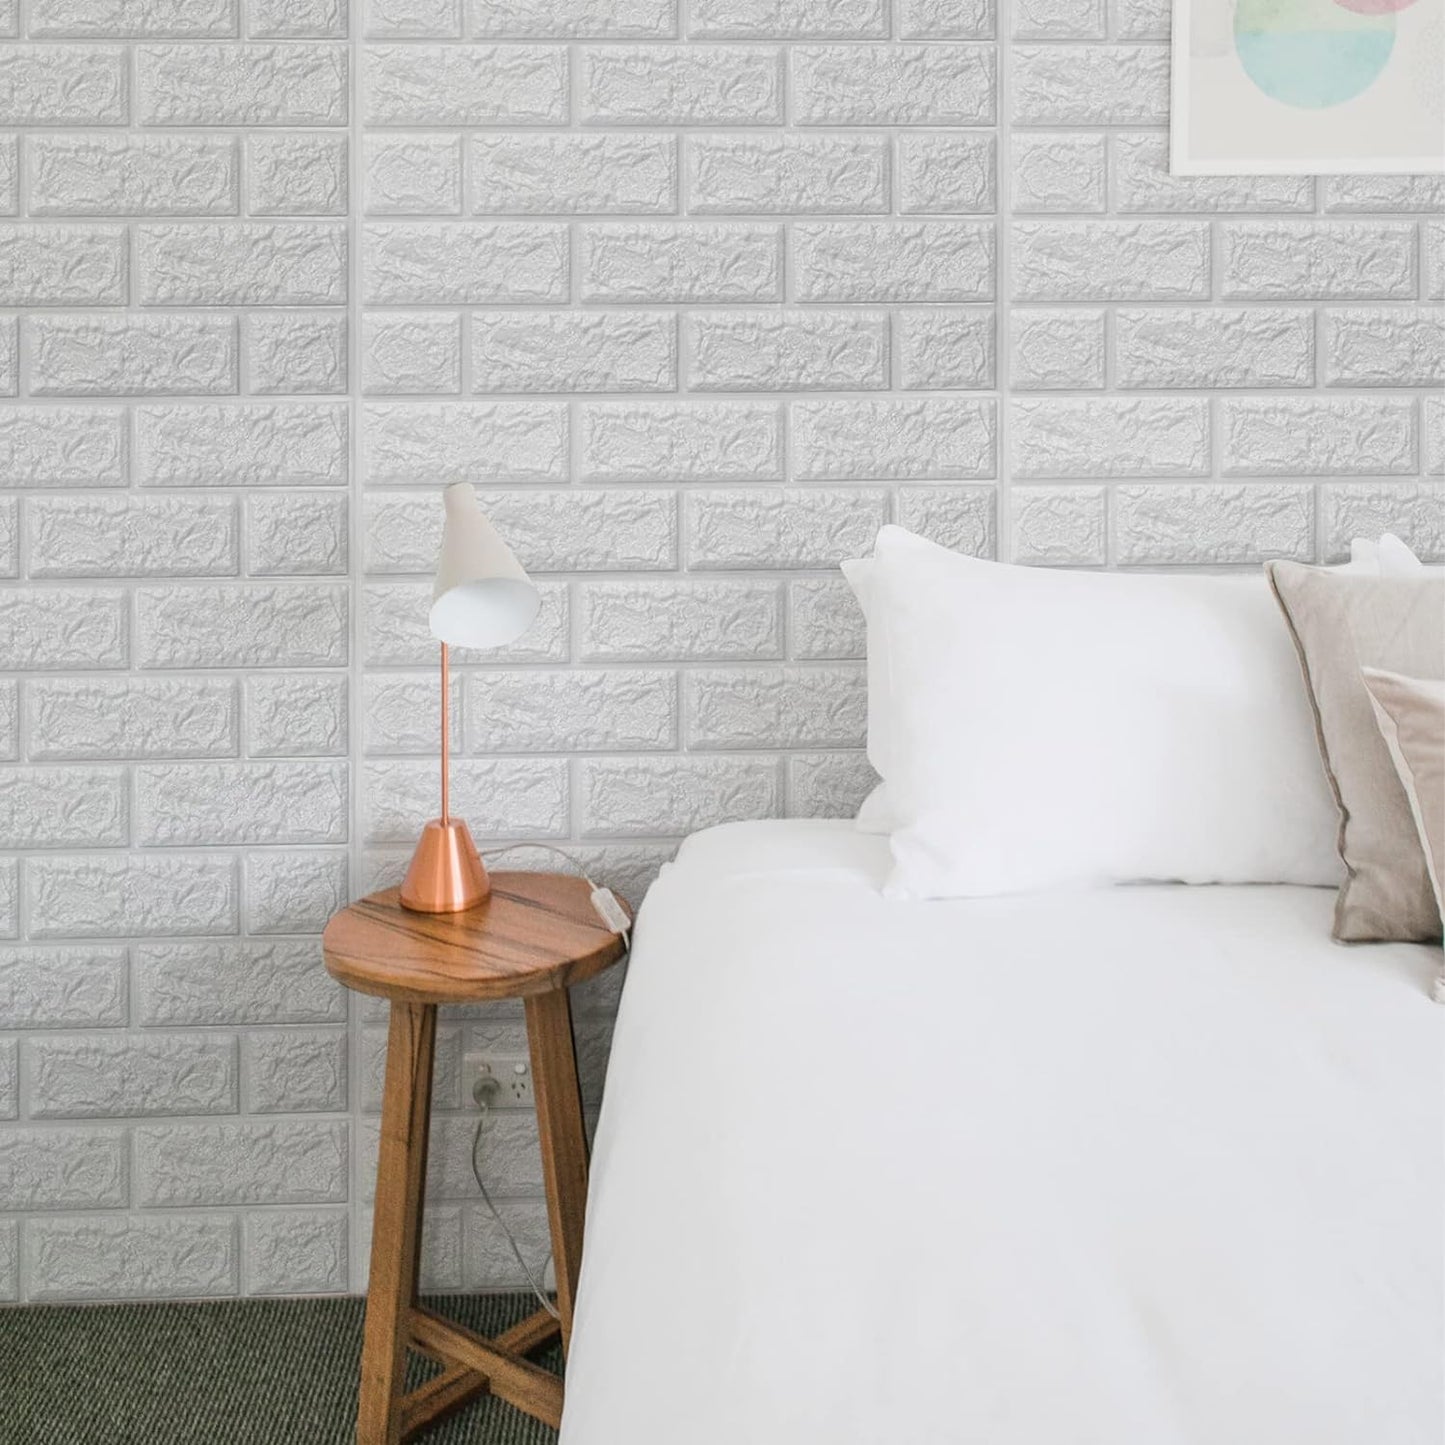 Art3d 30 piezas de papel tapiz de ladrillo 3D en blanco, paneles de pared de ladrillo de espuma sintética que se despegan y pegan, impermeables para decoración de dormitorio, sala de estar y lavandería (43.5 pies cuadrados)